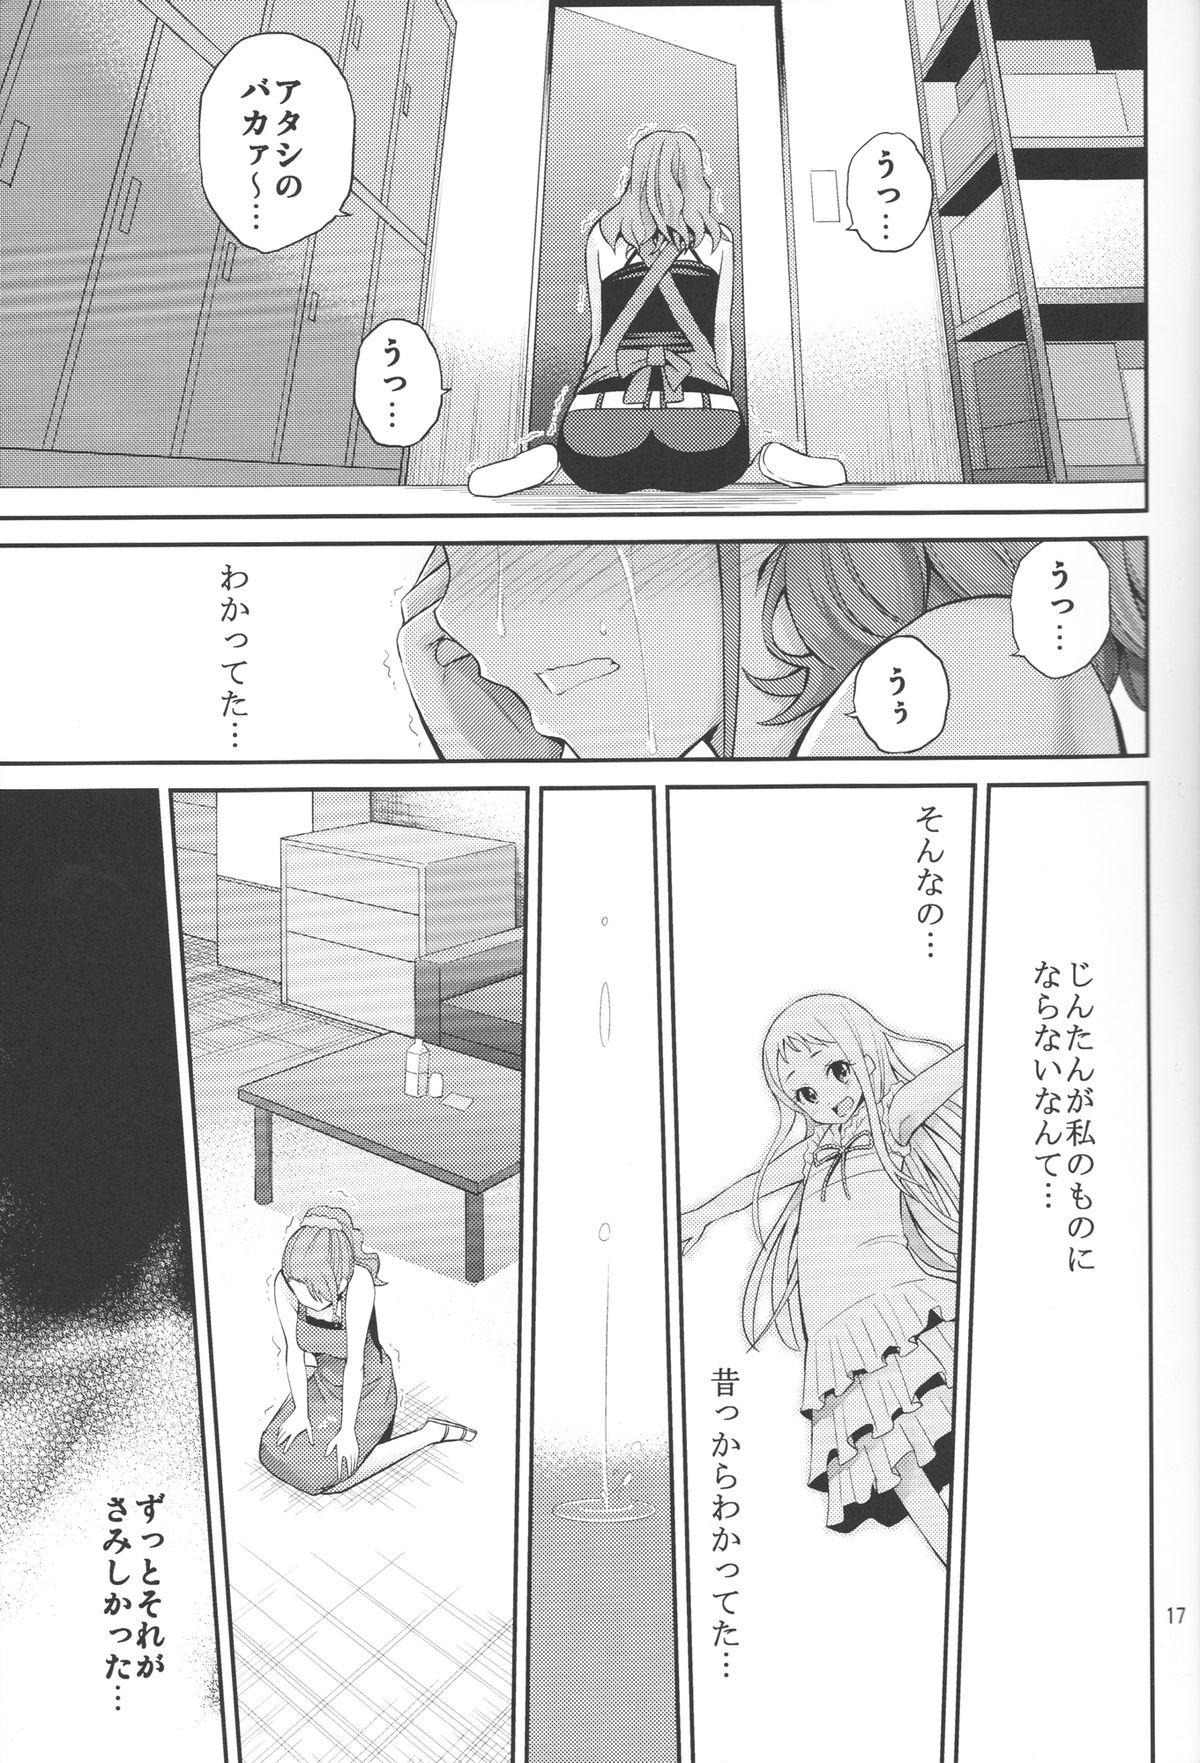 Ano Anaru no Sundome Manga o Bokutachi wa Mada Shiranai. 16